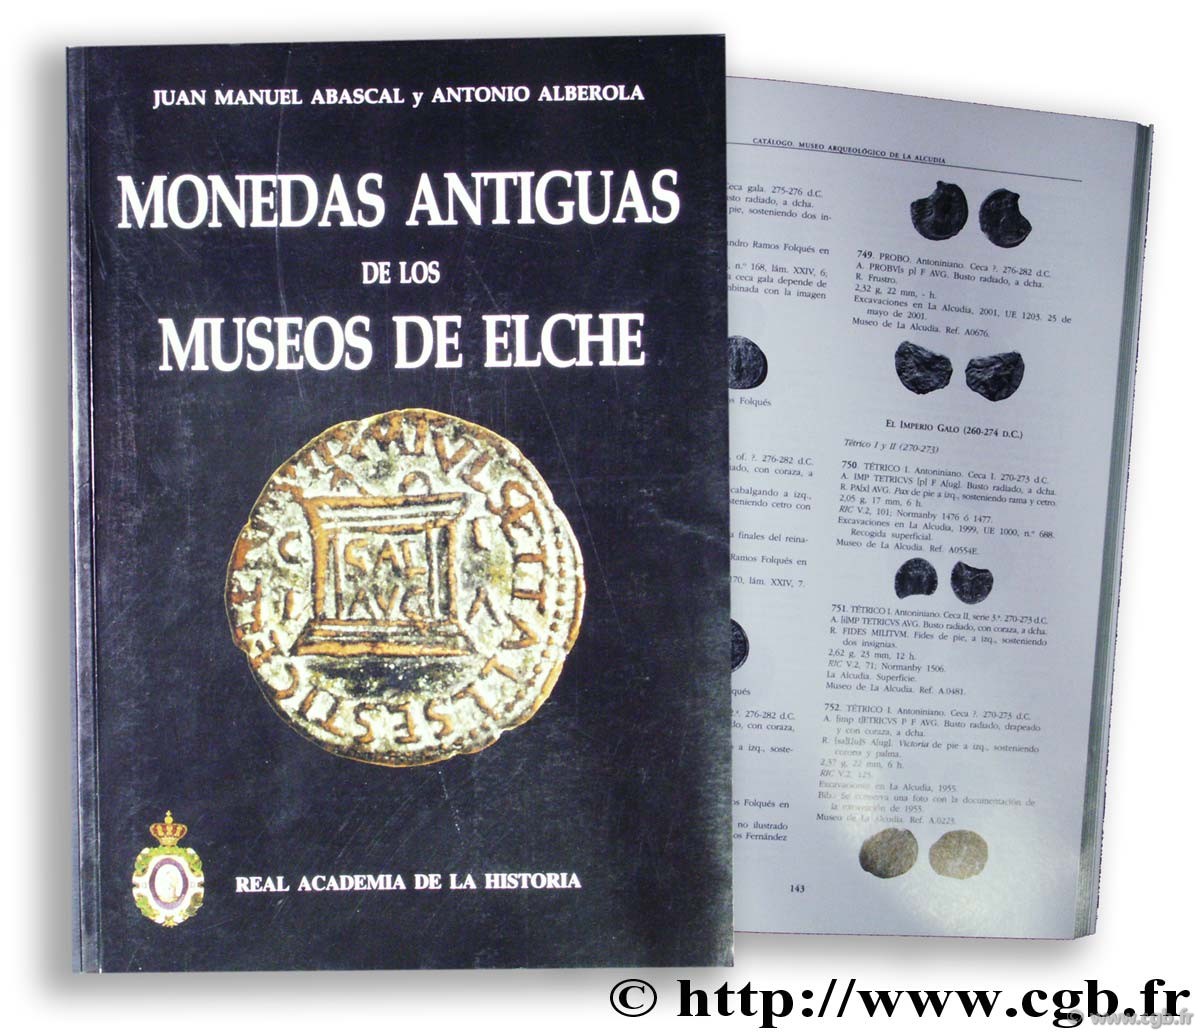 Monedas antiguas de los Museos de Elche ABASCAL J., ALBEROLA A.